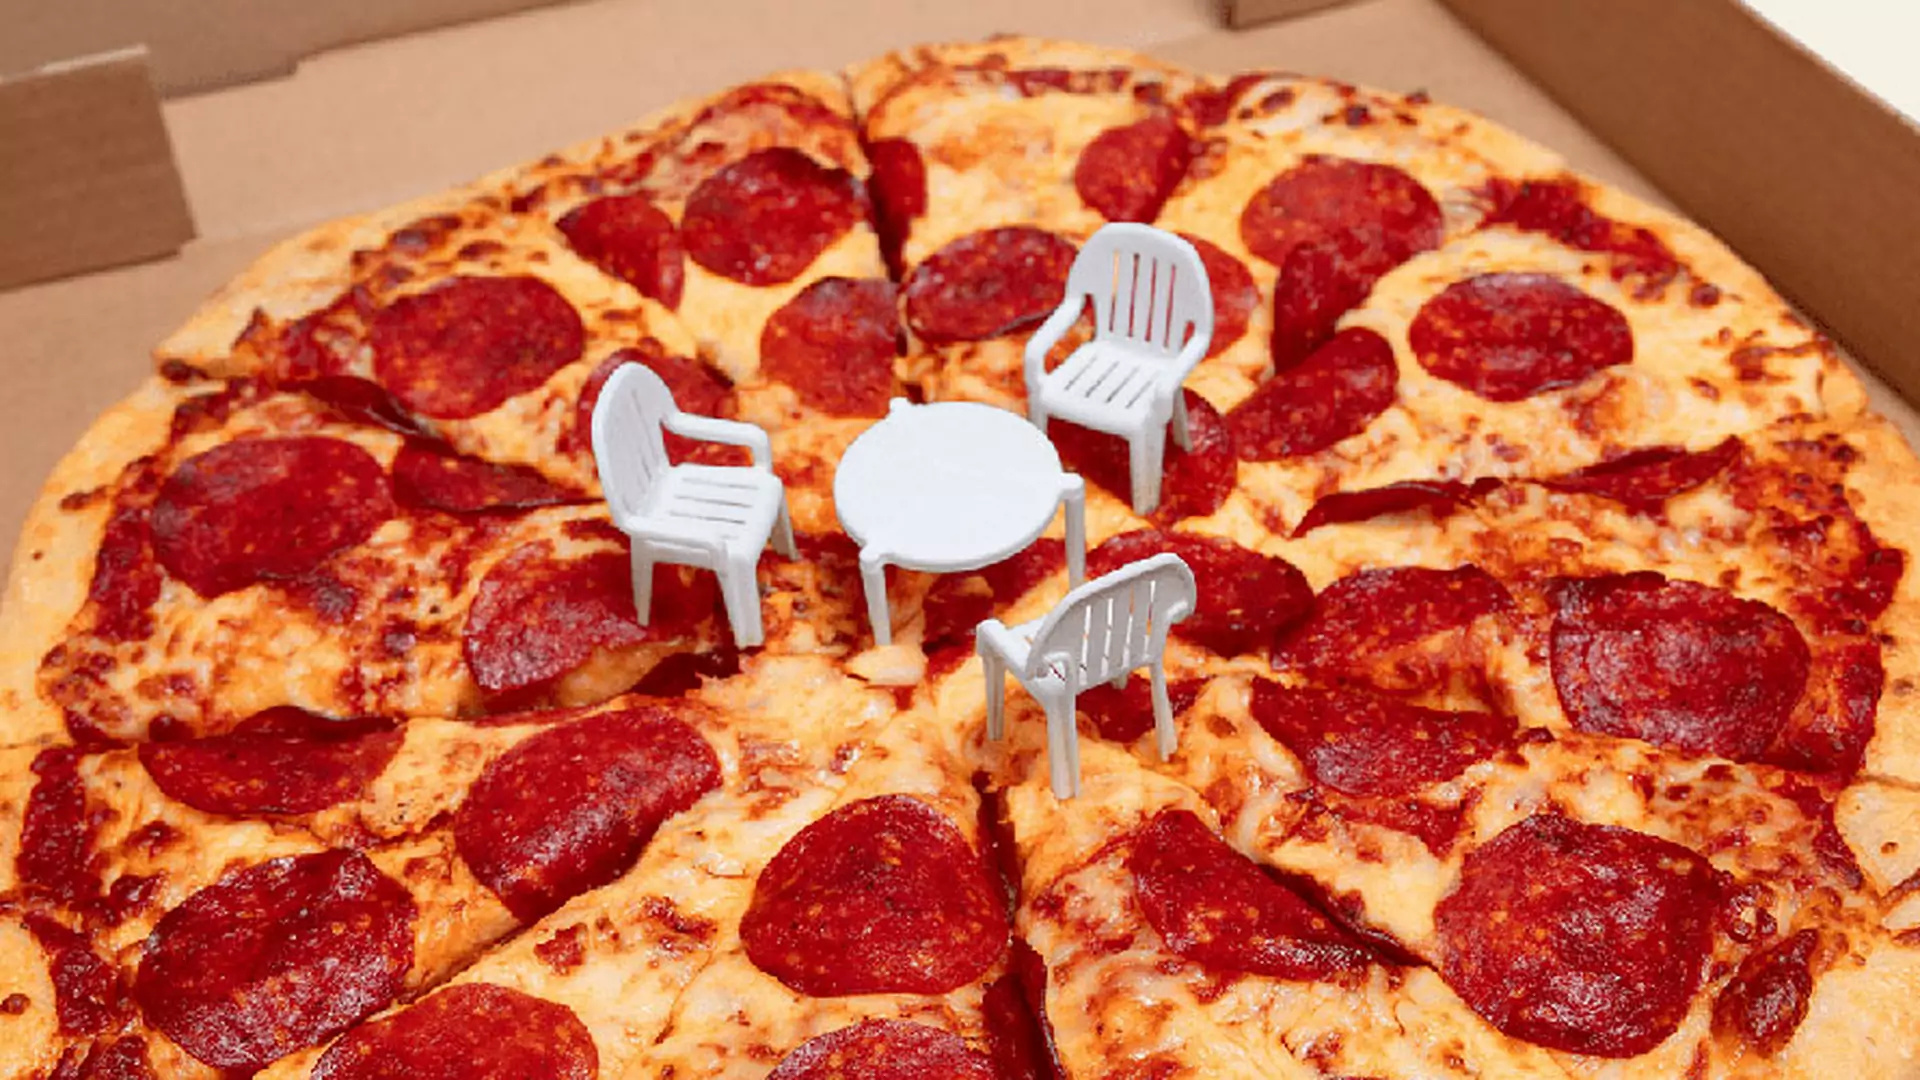 Pizza-patio, czyli jak wykrzesać 110% kreatywności z pudełka pizzy